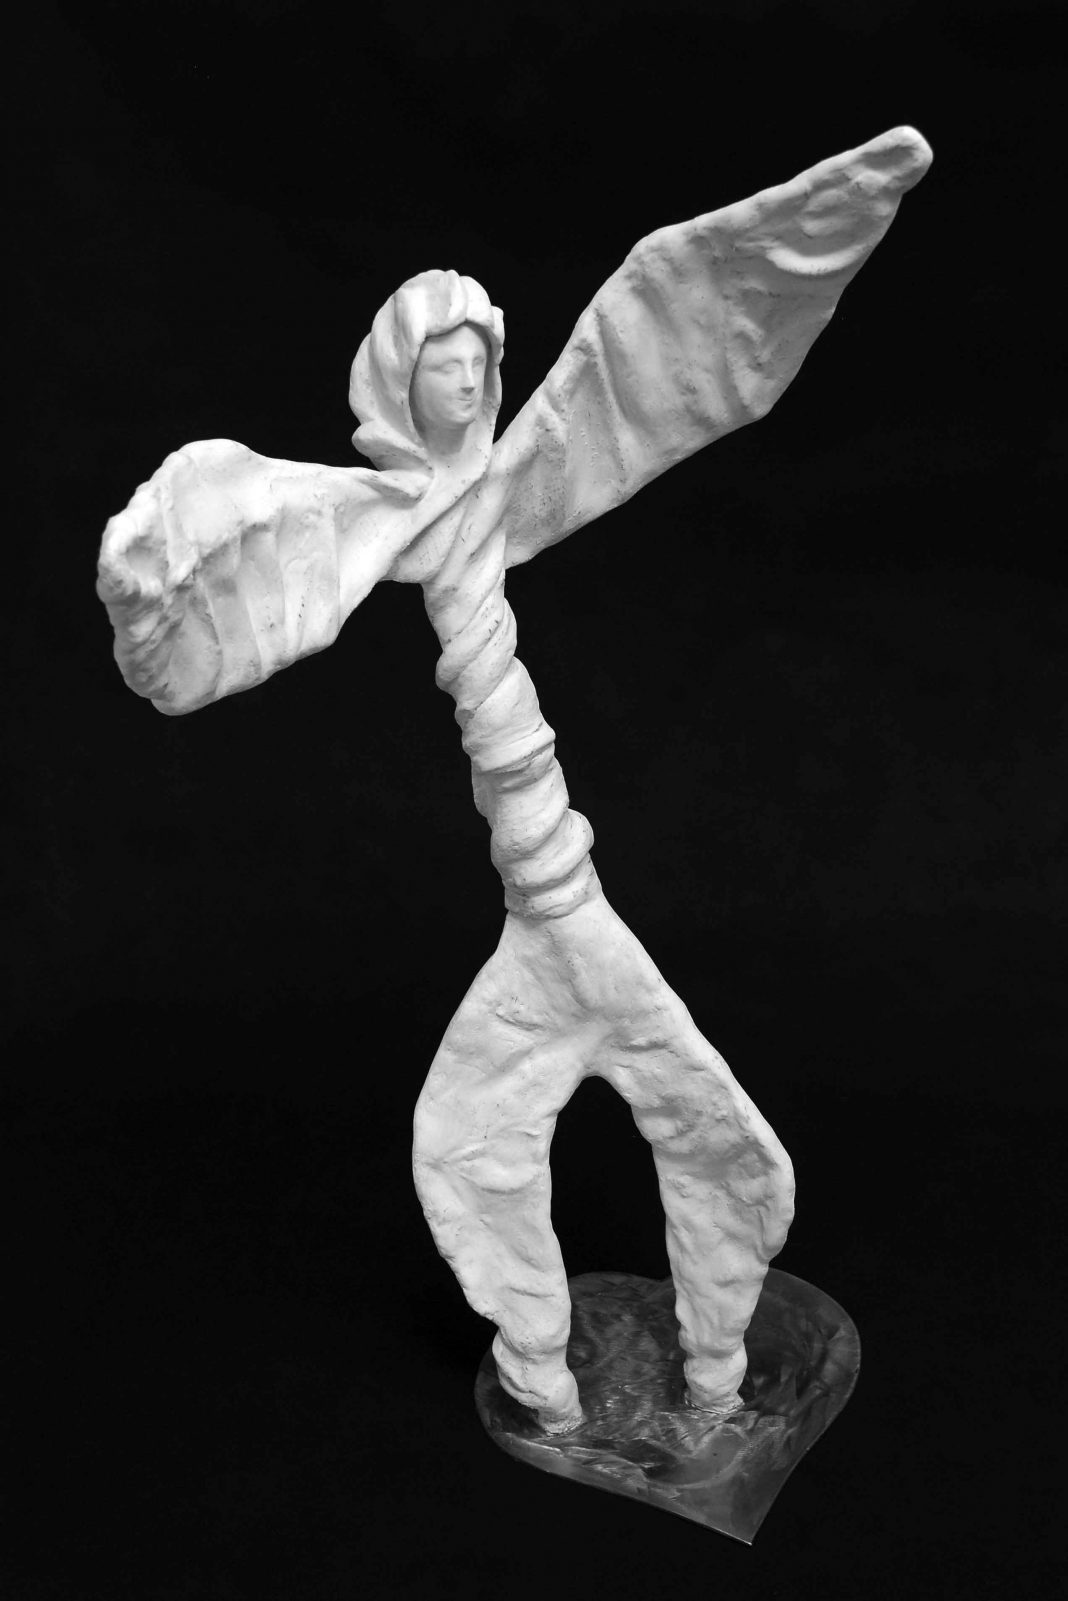 Gianni Martinetti – La corte del Sole, con riflessi scultorei della Terrahttps://www.exibart.com/repository/media/eventi/2011/11/gianni-martinetti-8211-la-corte-del-sole-con-riflessi-scultorei-della-terra-1068x1601.jpg